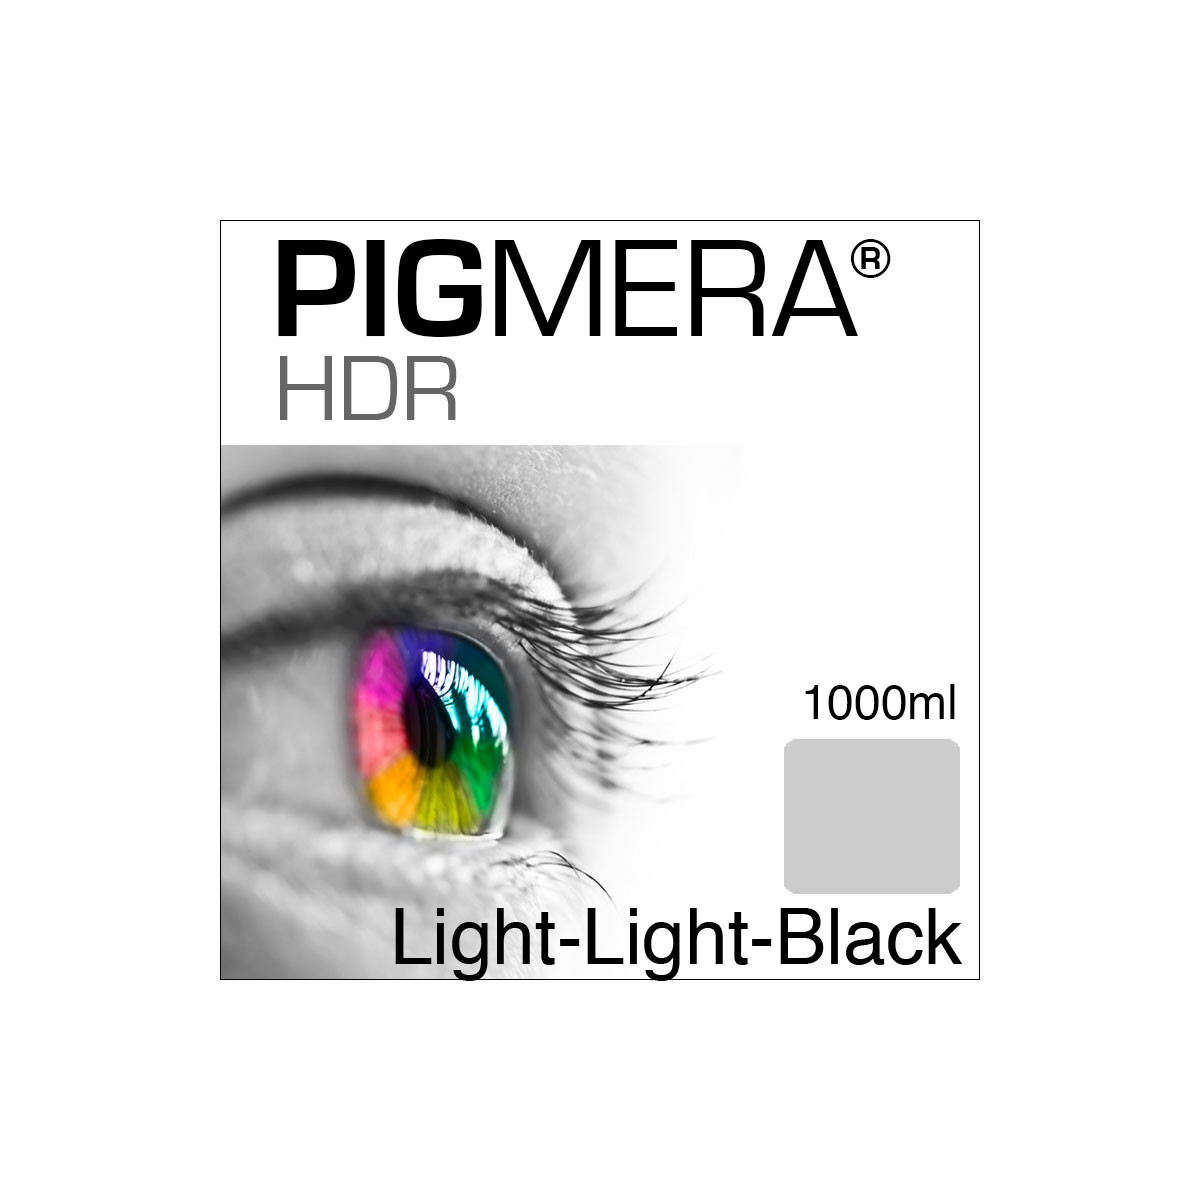 farbenwerk Pigmera HDR Bottle Light-Light-Black 1000ml